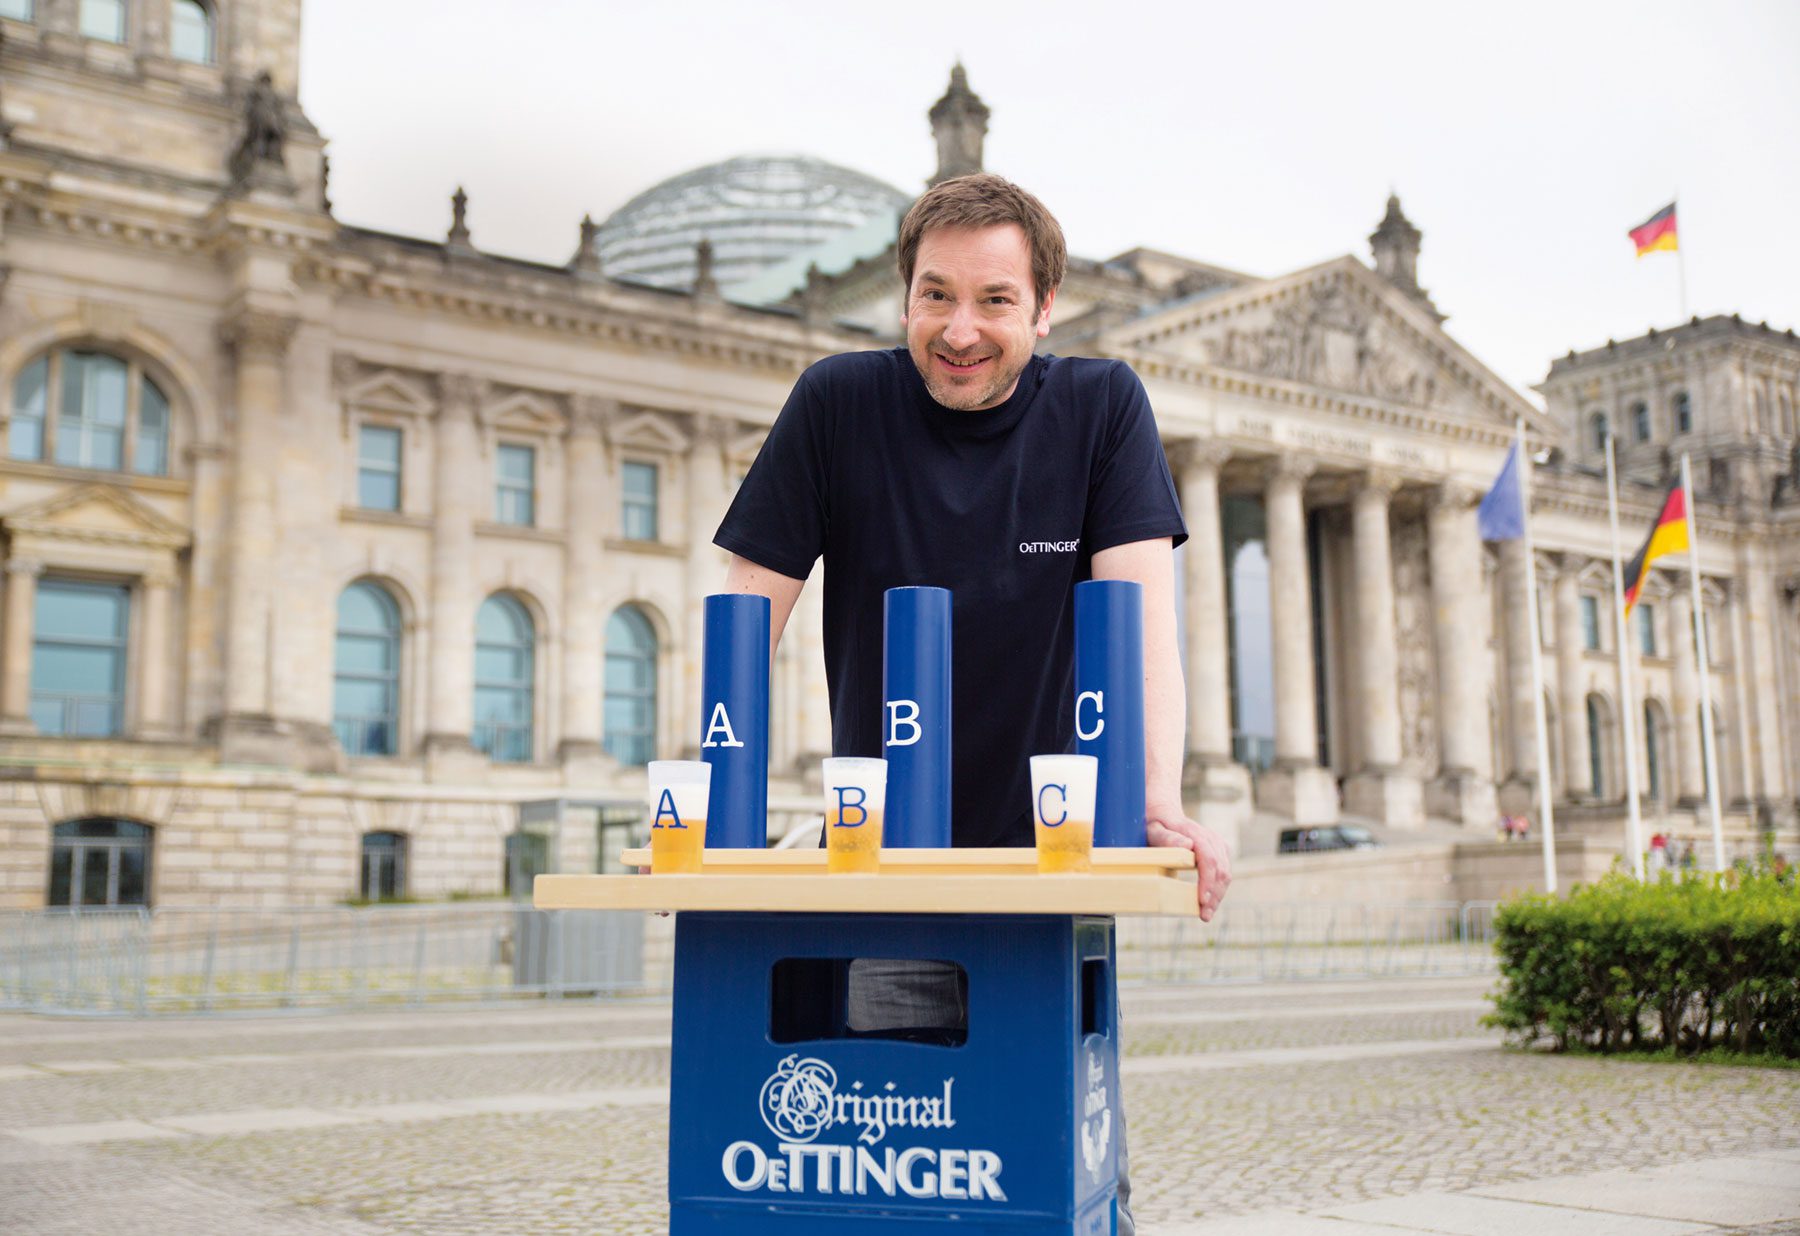 Bierprobe vor dem Reichstag in Berlin